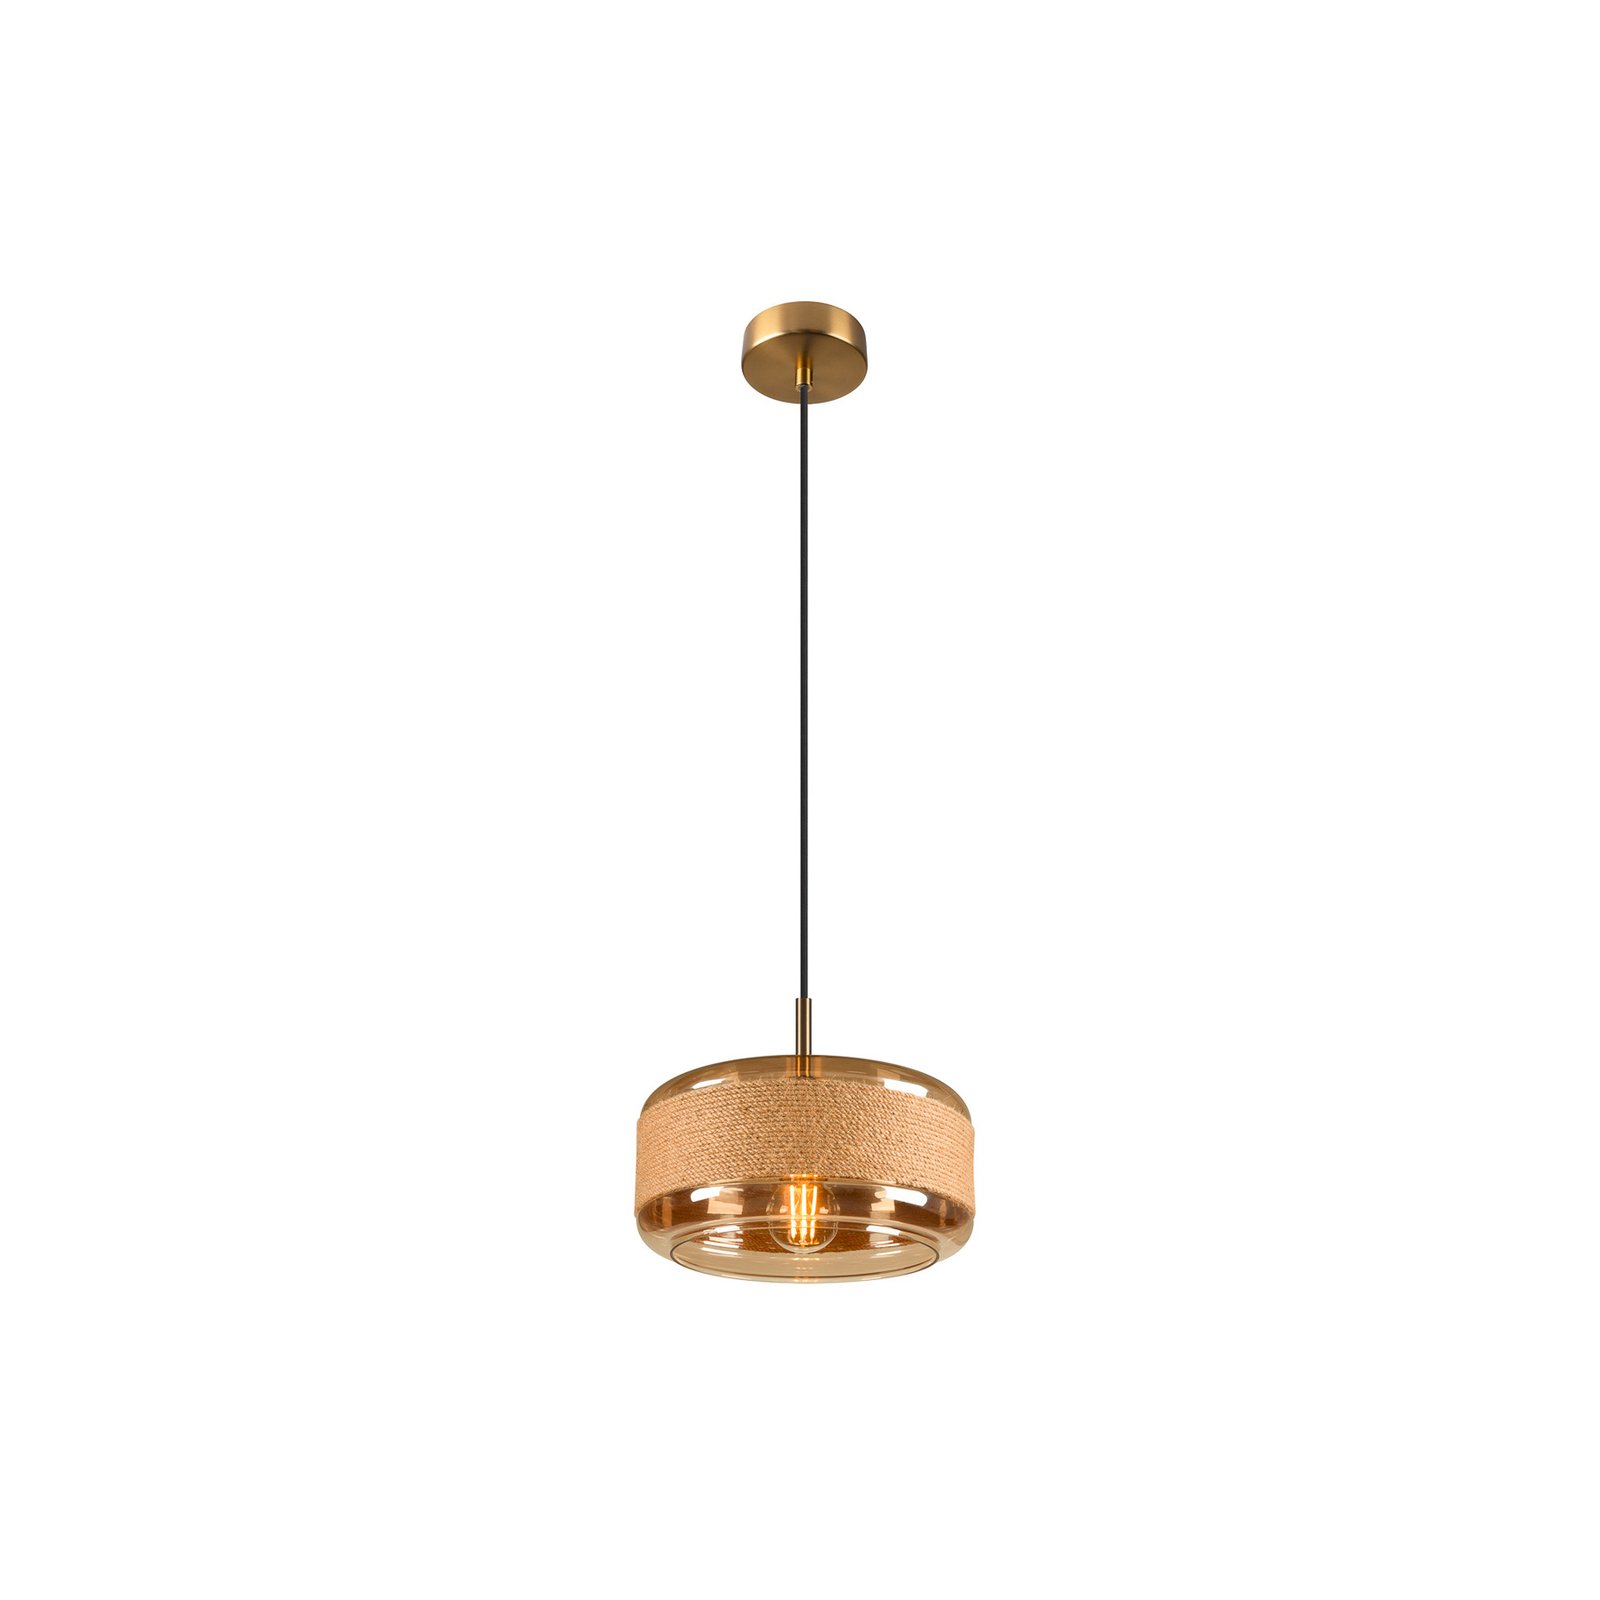 Pantilo Rope 27 hanglamp, goudkleurig, staal, Ø 27 cm